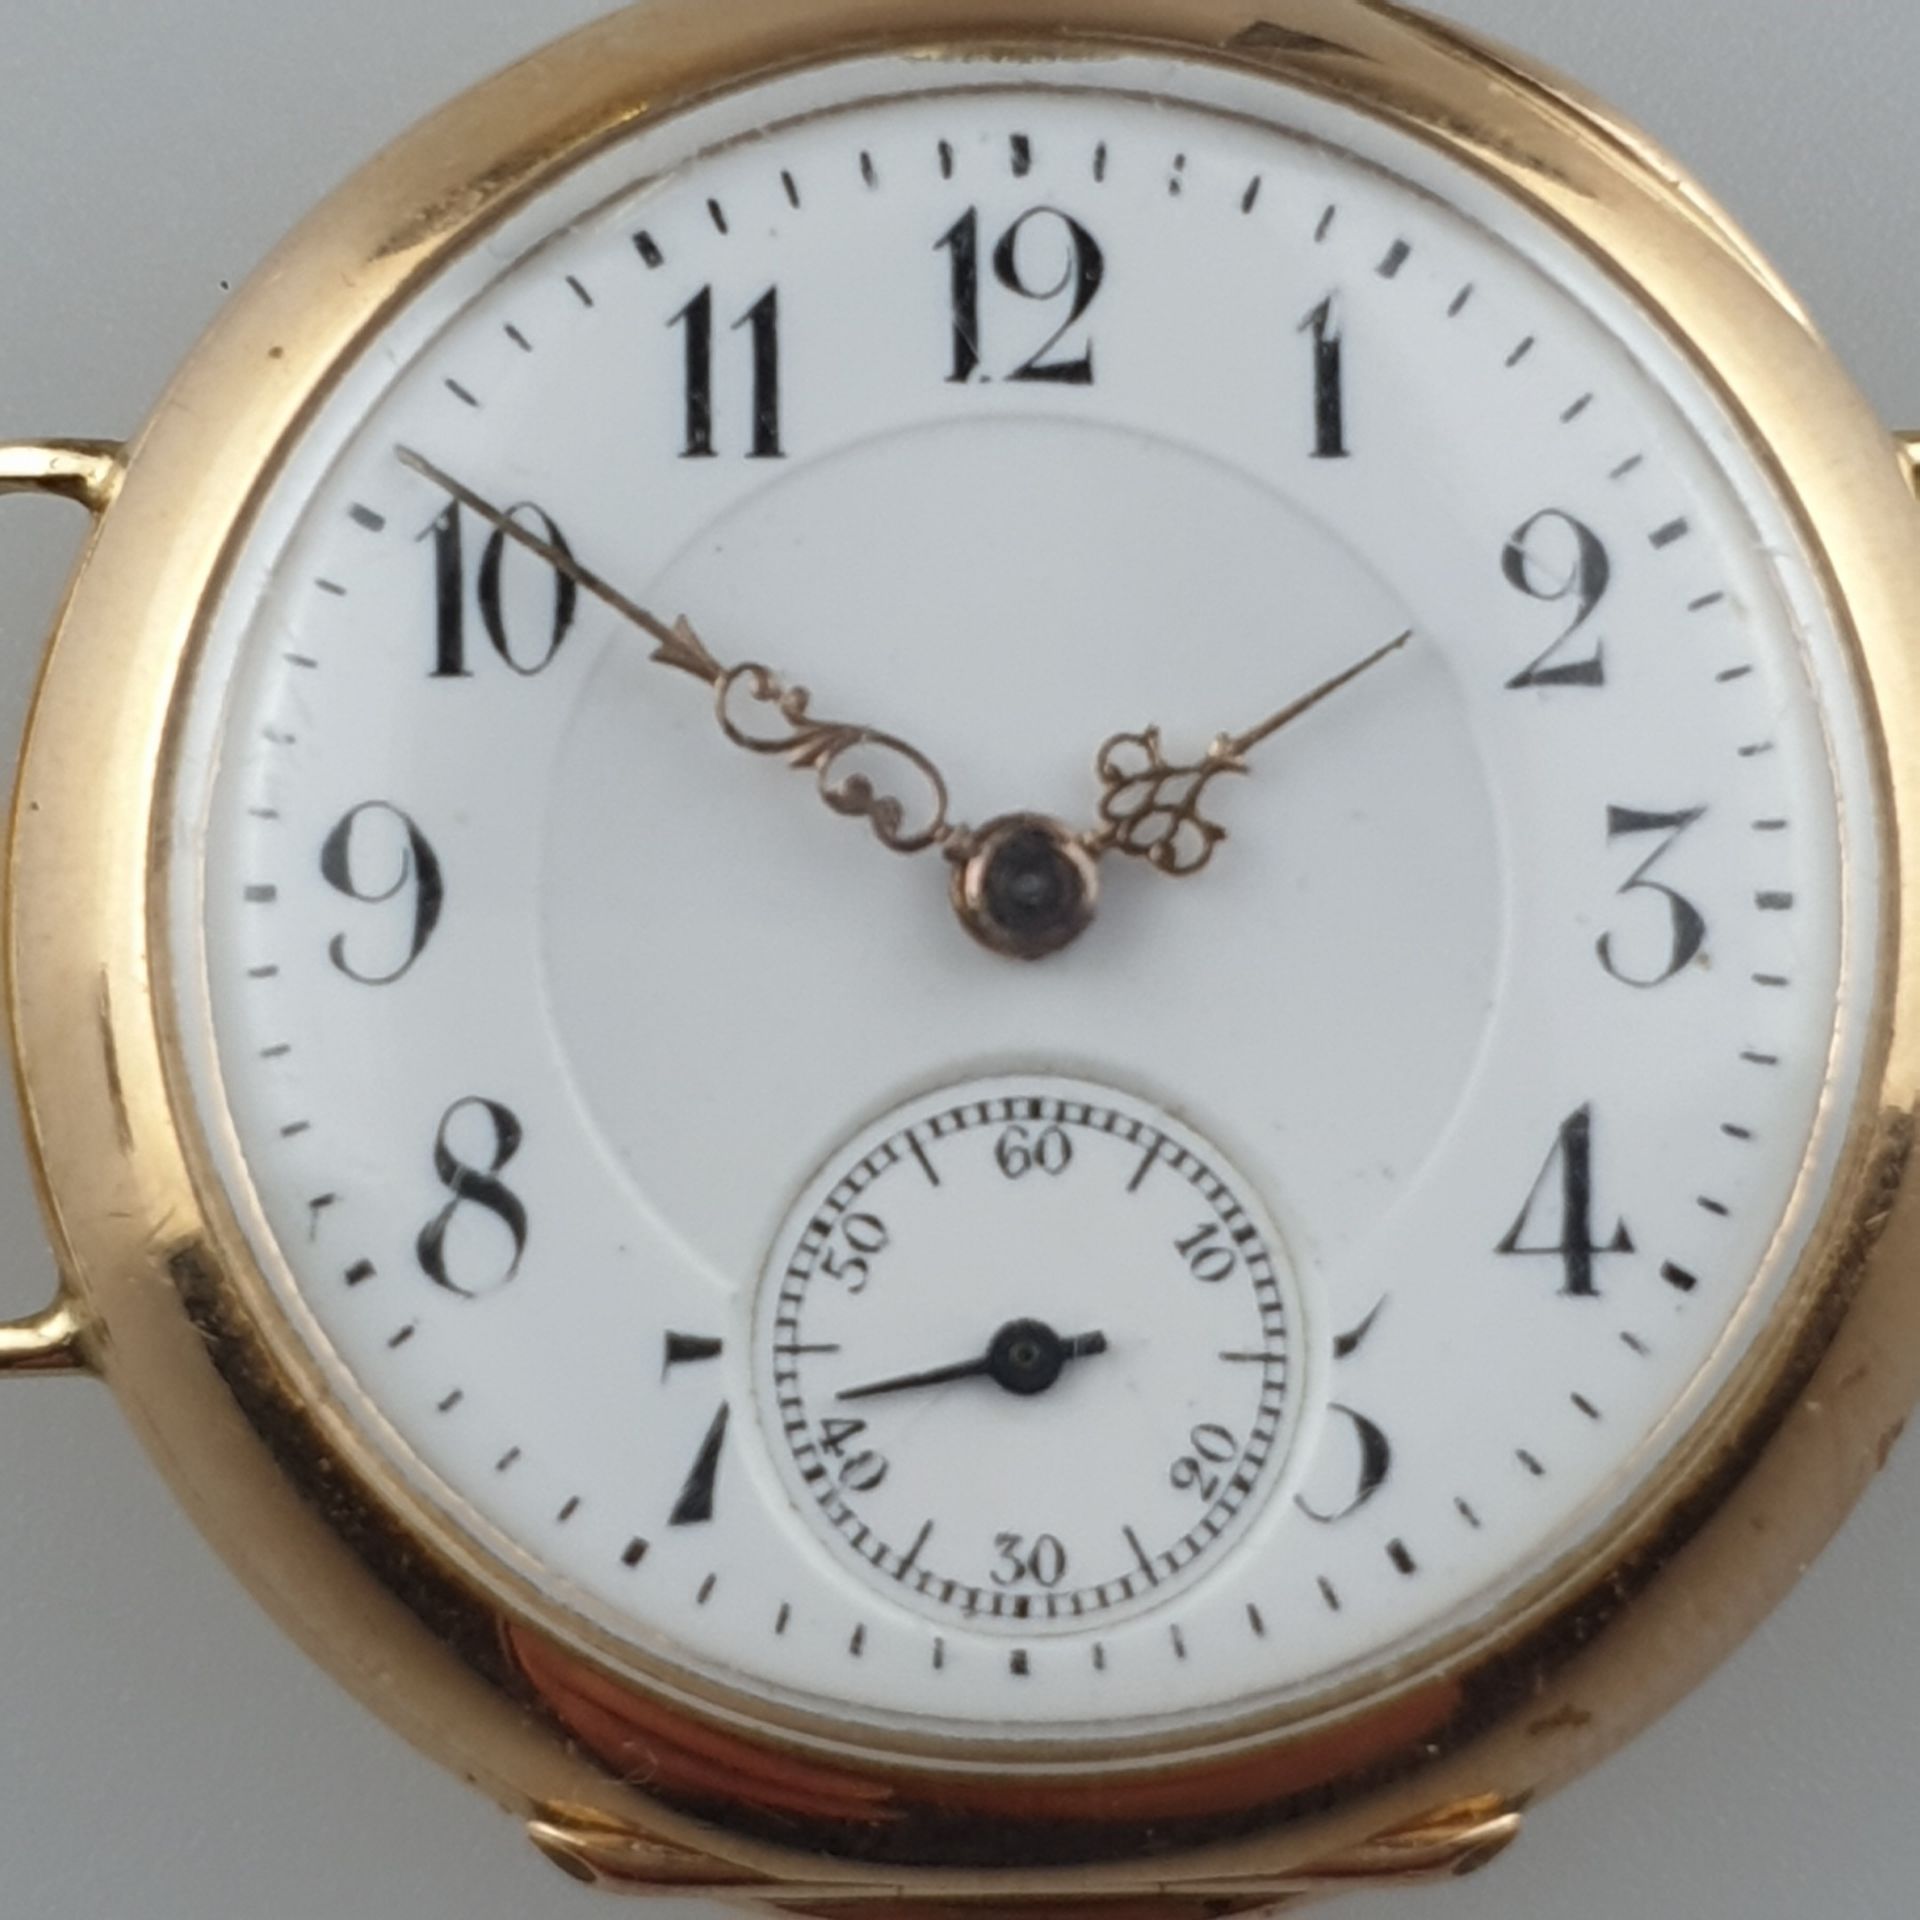 Gold-Taschen-/Armbanduhr - Schweiz, Zenith, Kronenaufzug, Stunde, Minute, kleine Sekunde, weißes Em - Bild 2 aus 6